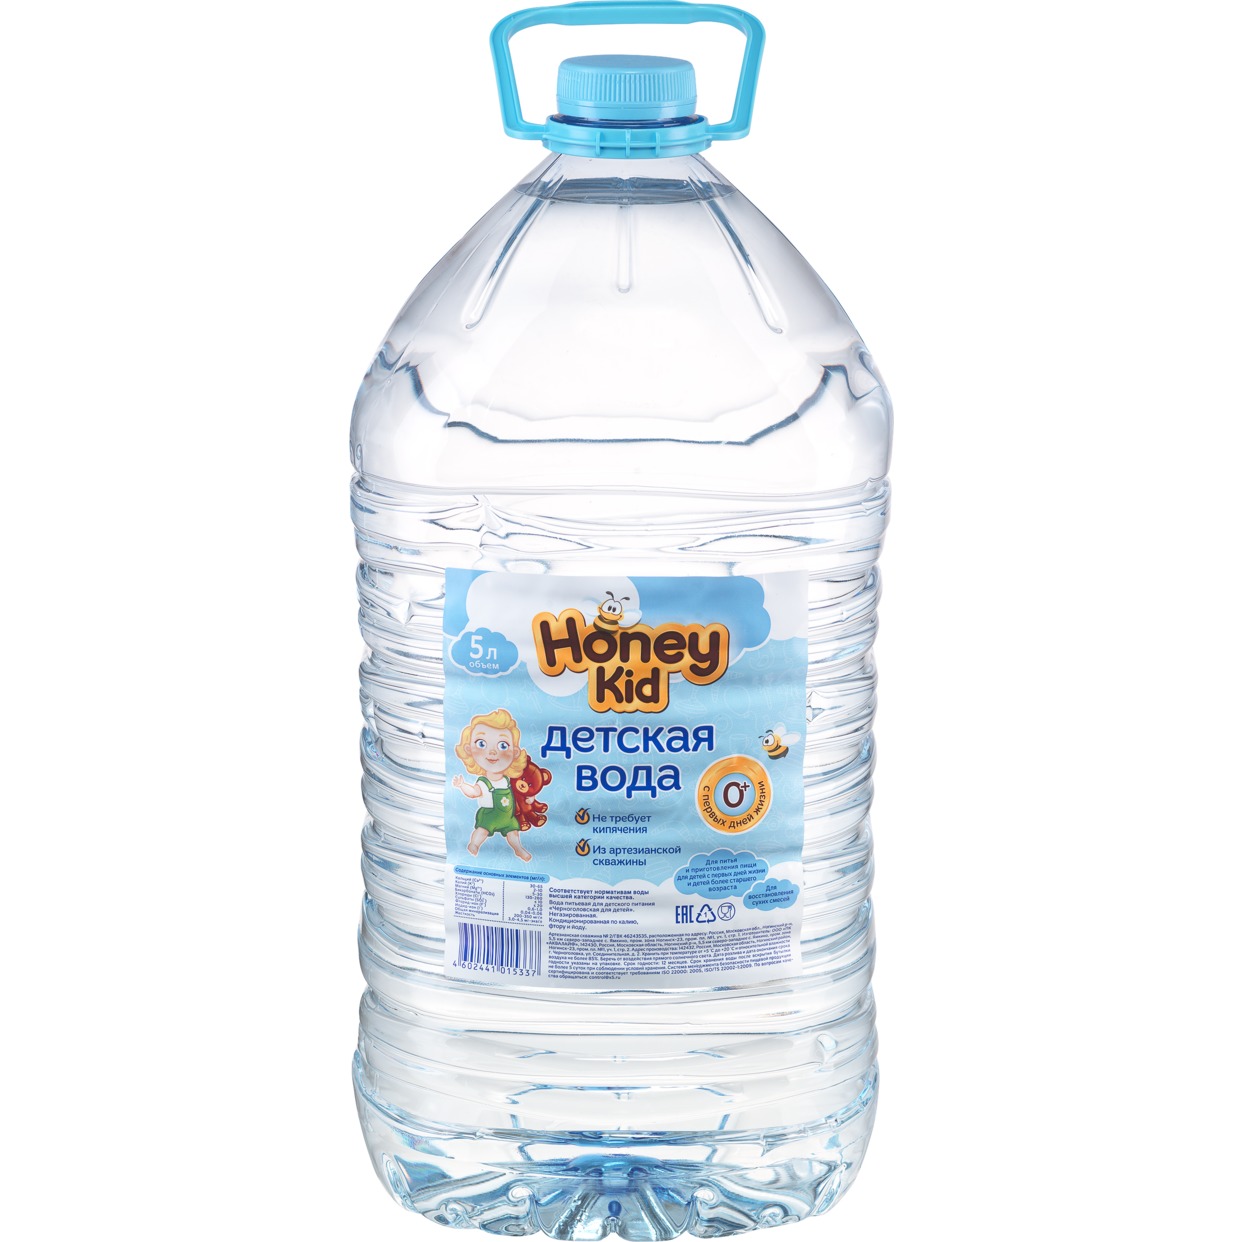 Вода Honey kid, Черноголовская, питьевая, 5 л по акции в Пятерочке